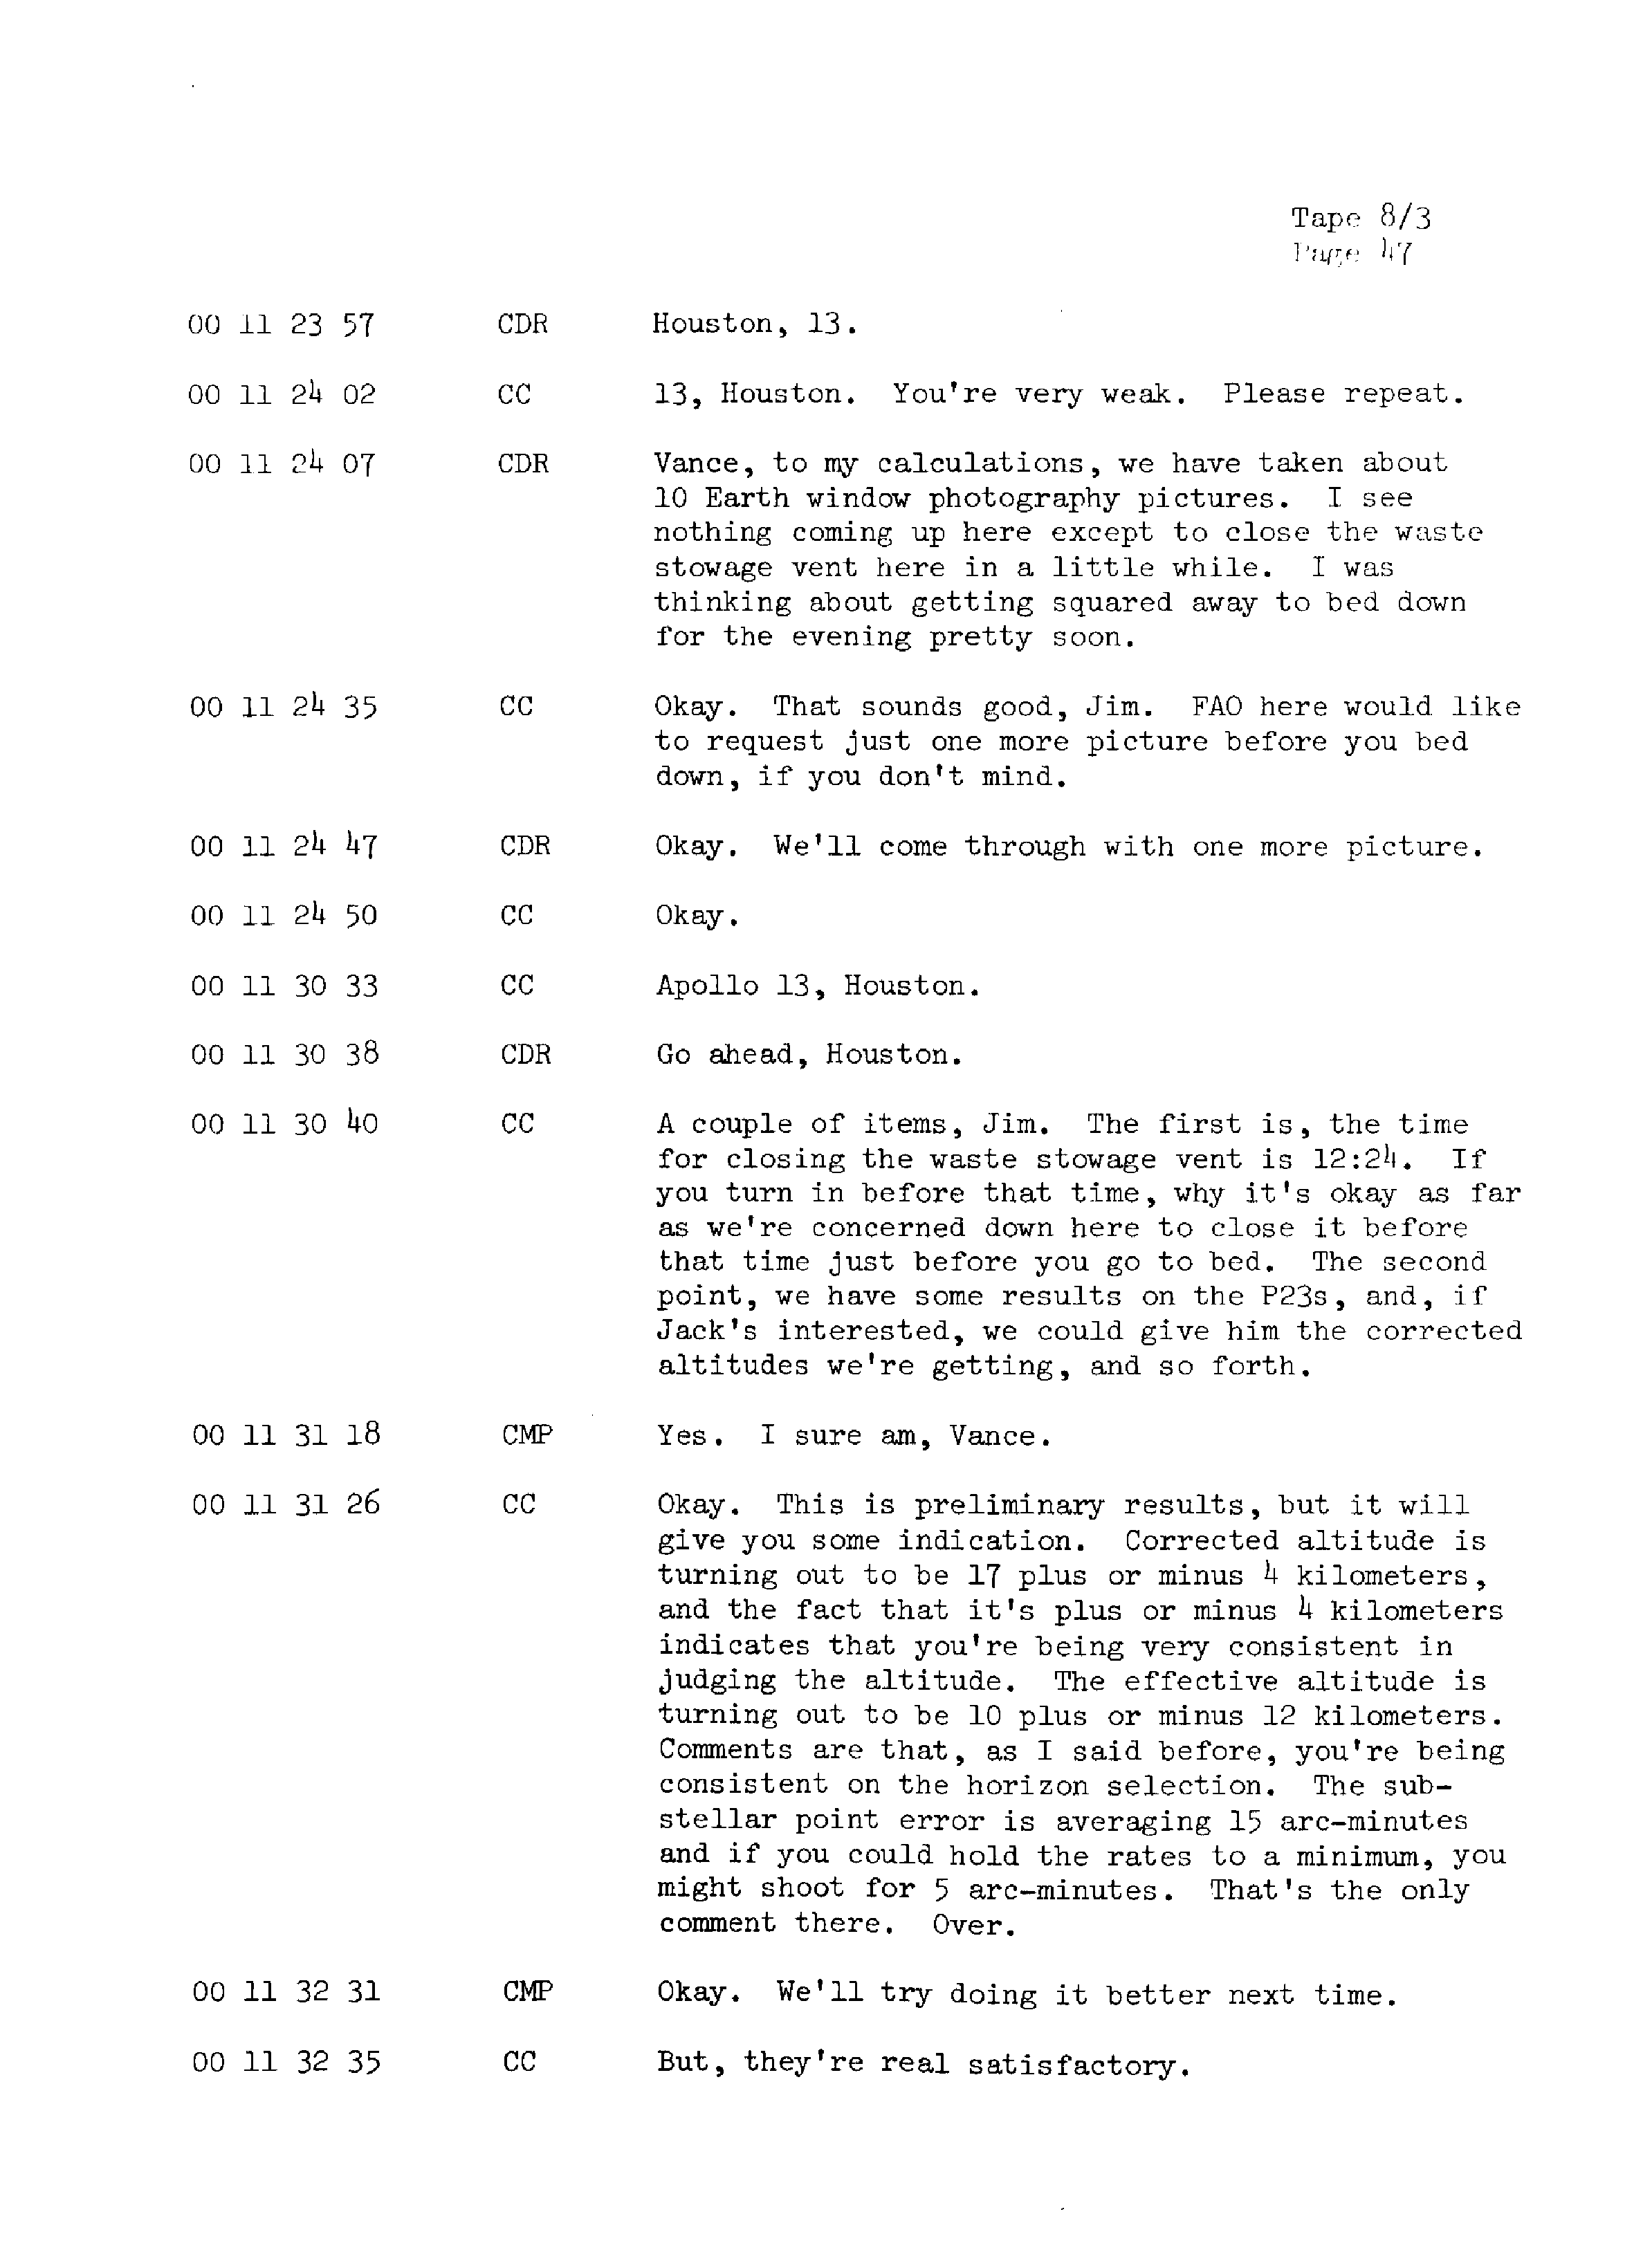 Page 54 of Apollo 13’s original transcript